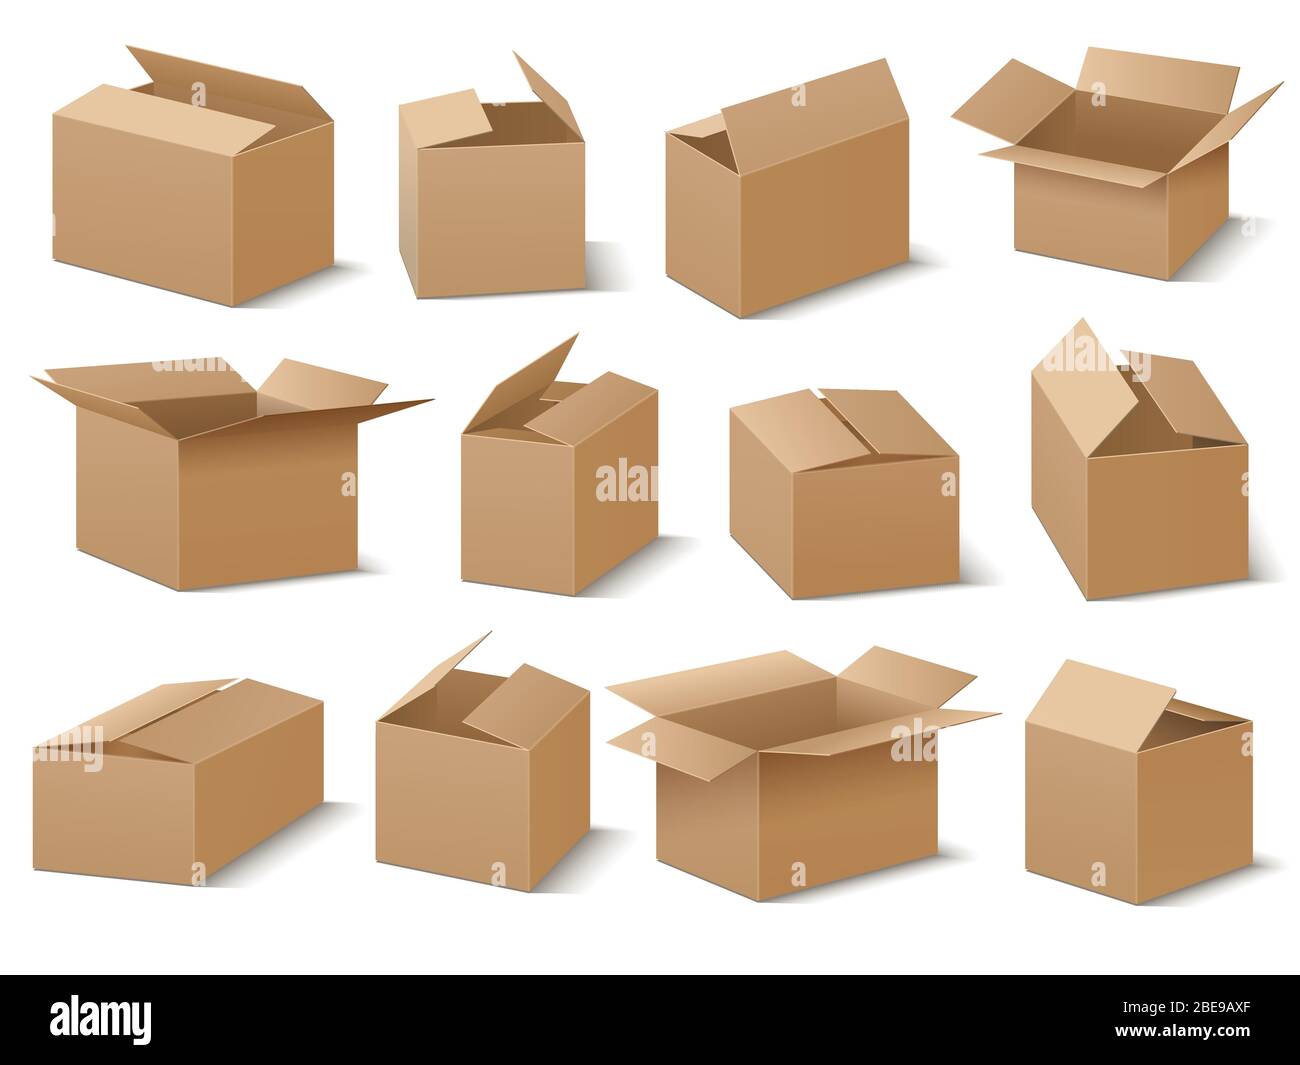 Boîte en carton ouverte et fermée, jeu vectoriel. Illustration de la collection de boîtes brunes, du conteneur en carton et de la caisse Illustration de Vecteur